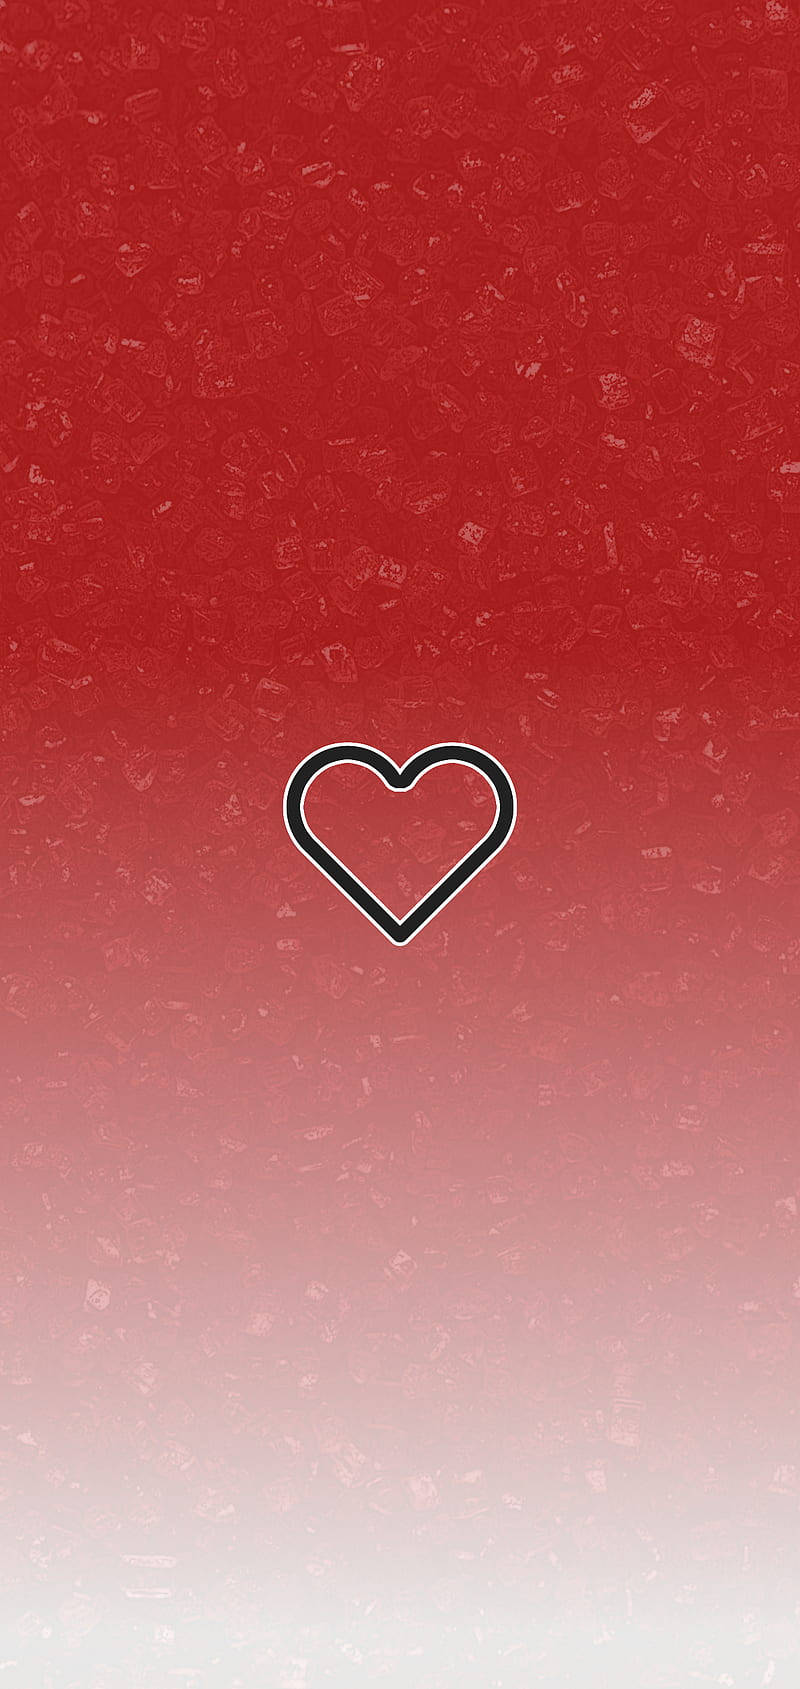 Cute Instagram Heart On Red Wallpaper